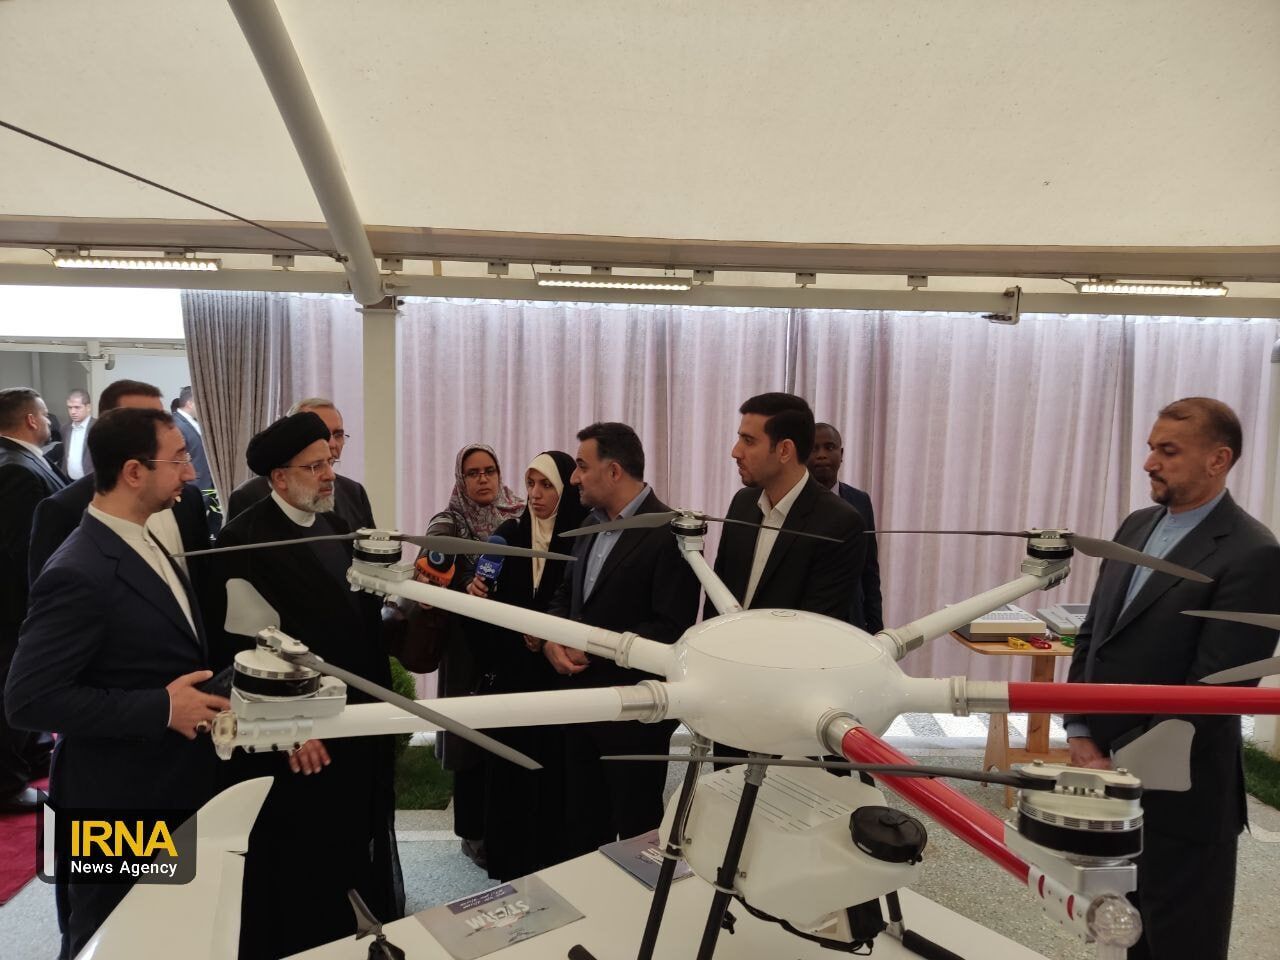 Kenia und Uganda beantragen mit Hilfe Irans die Einrichtung technologischer Servicezentren für landwirtschaftliche Drohnen